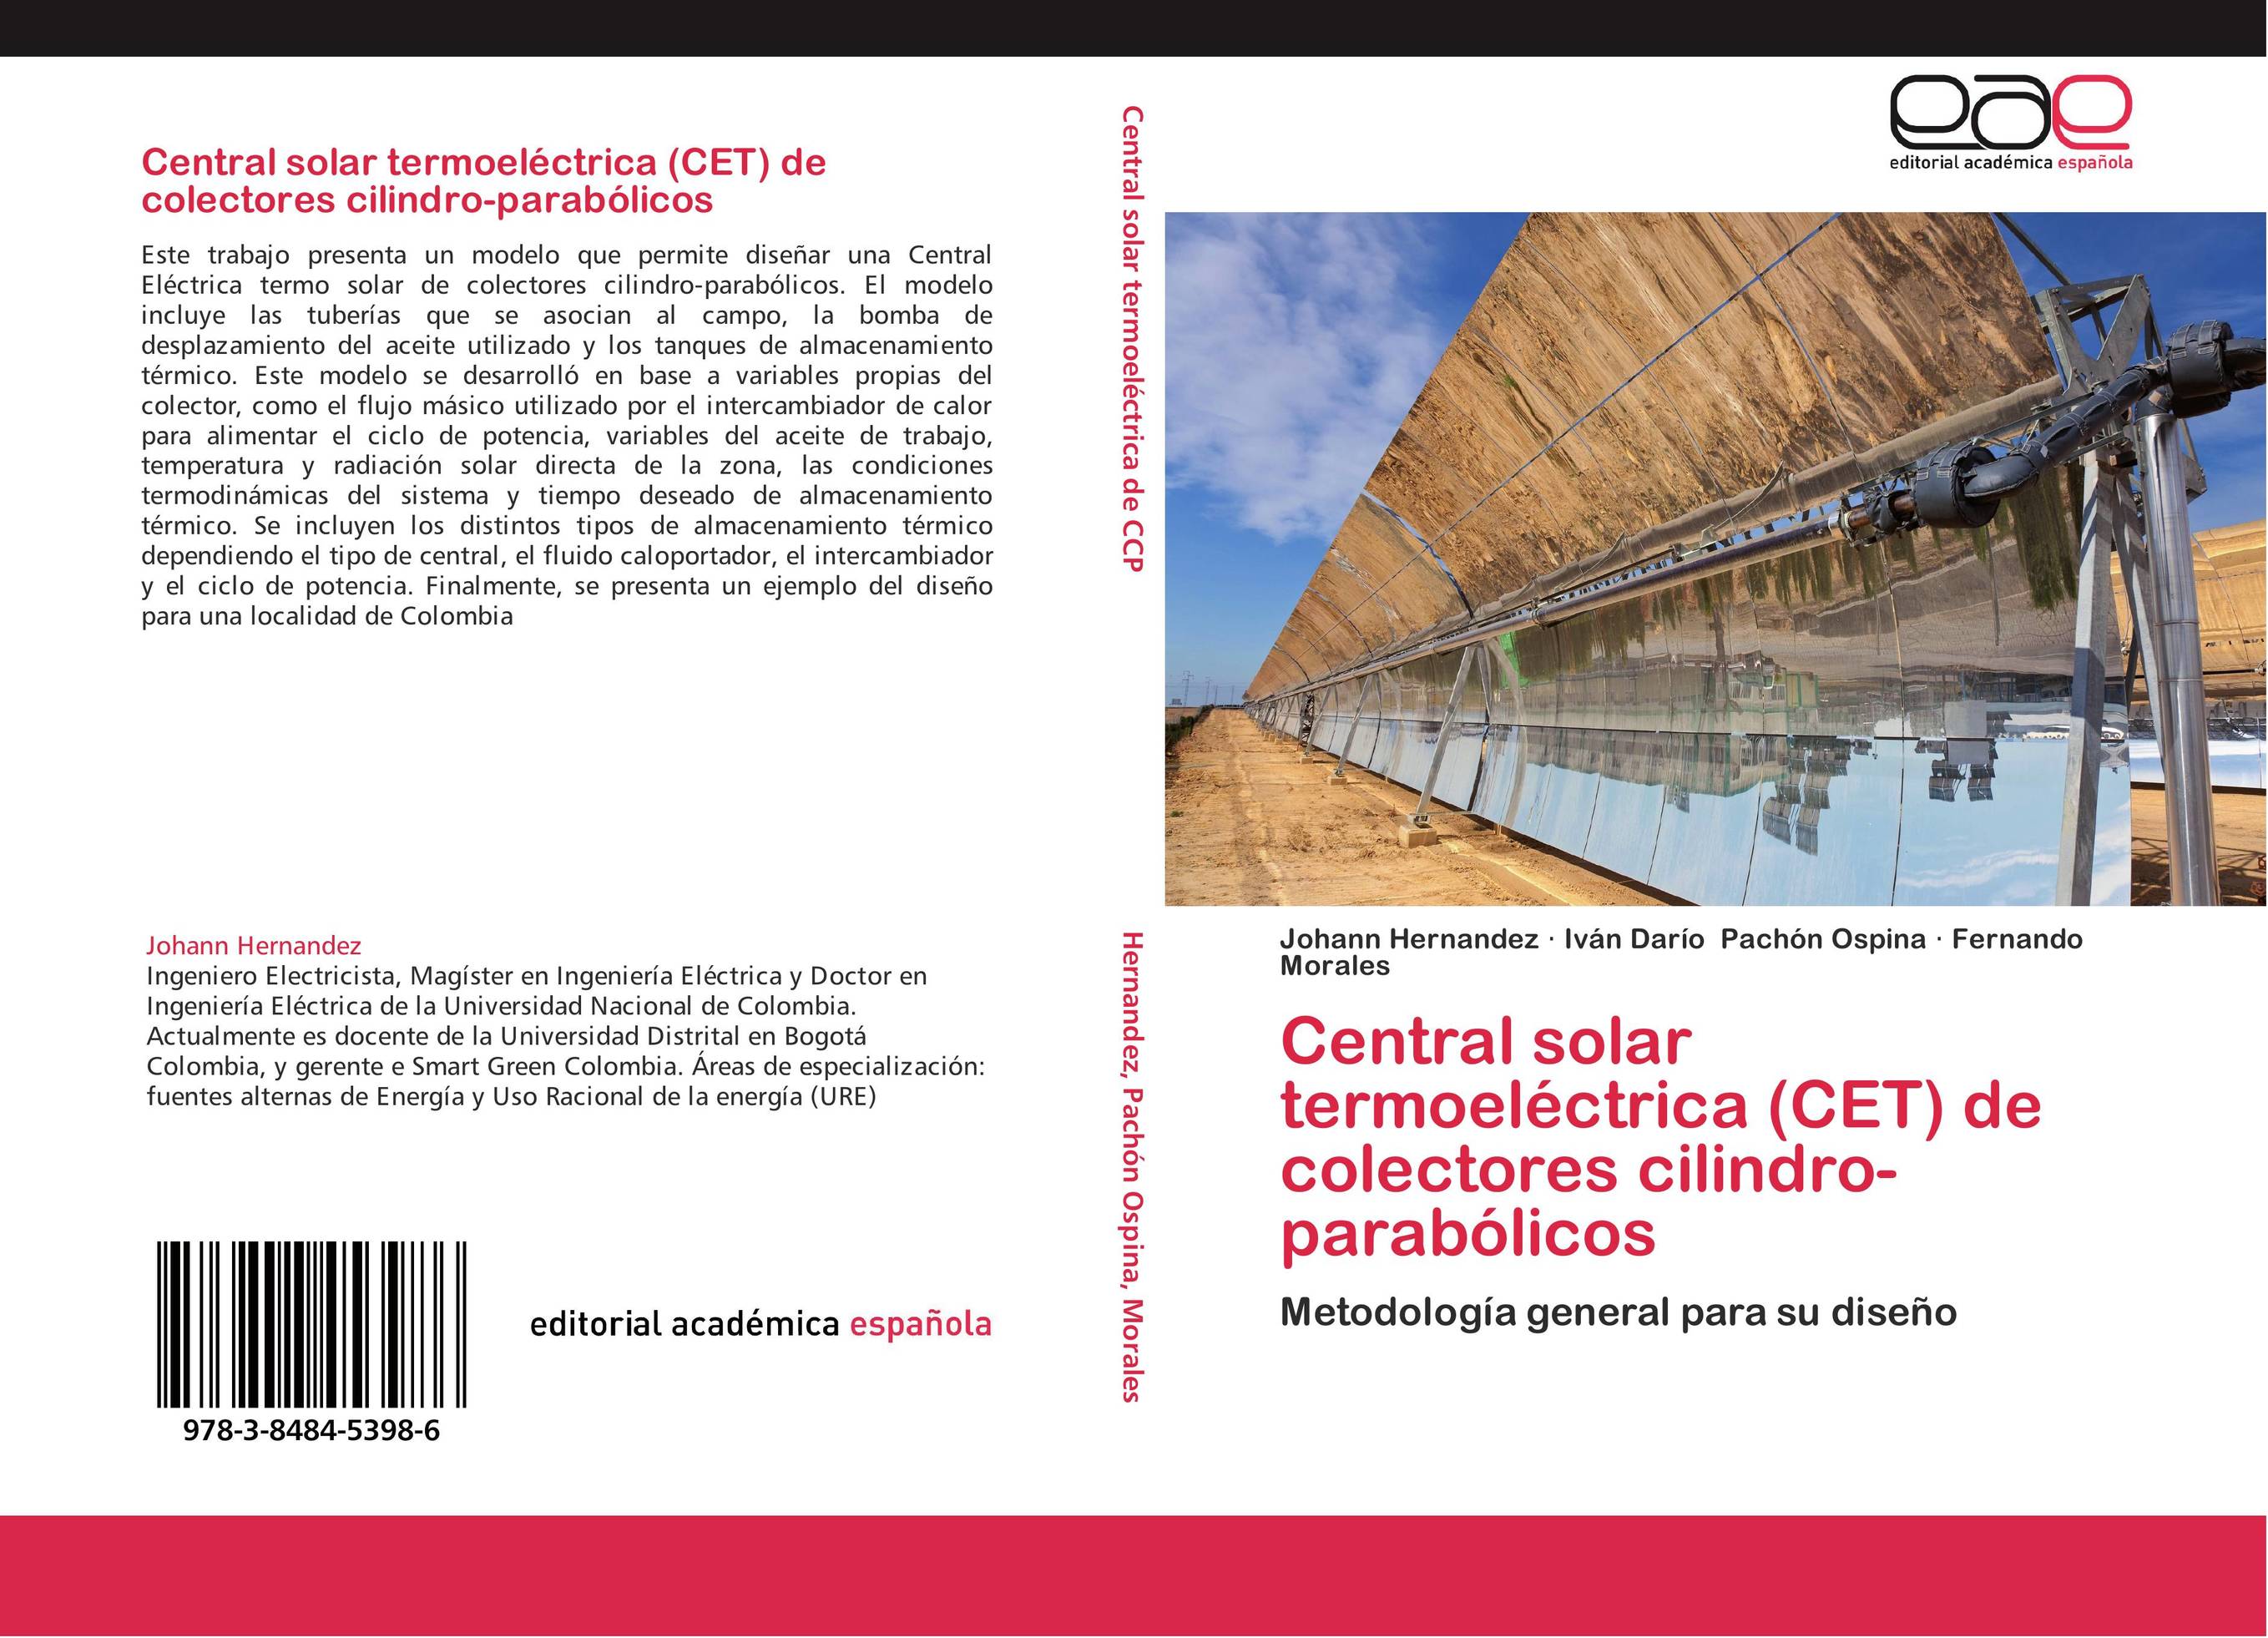 Central solar termoeléctrica (CET) de colectores cilindro-parabólicos